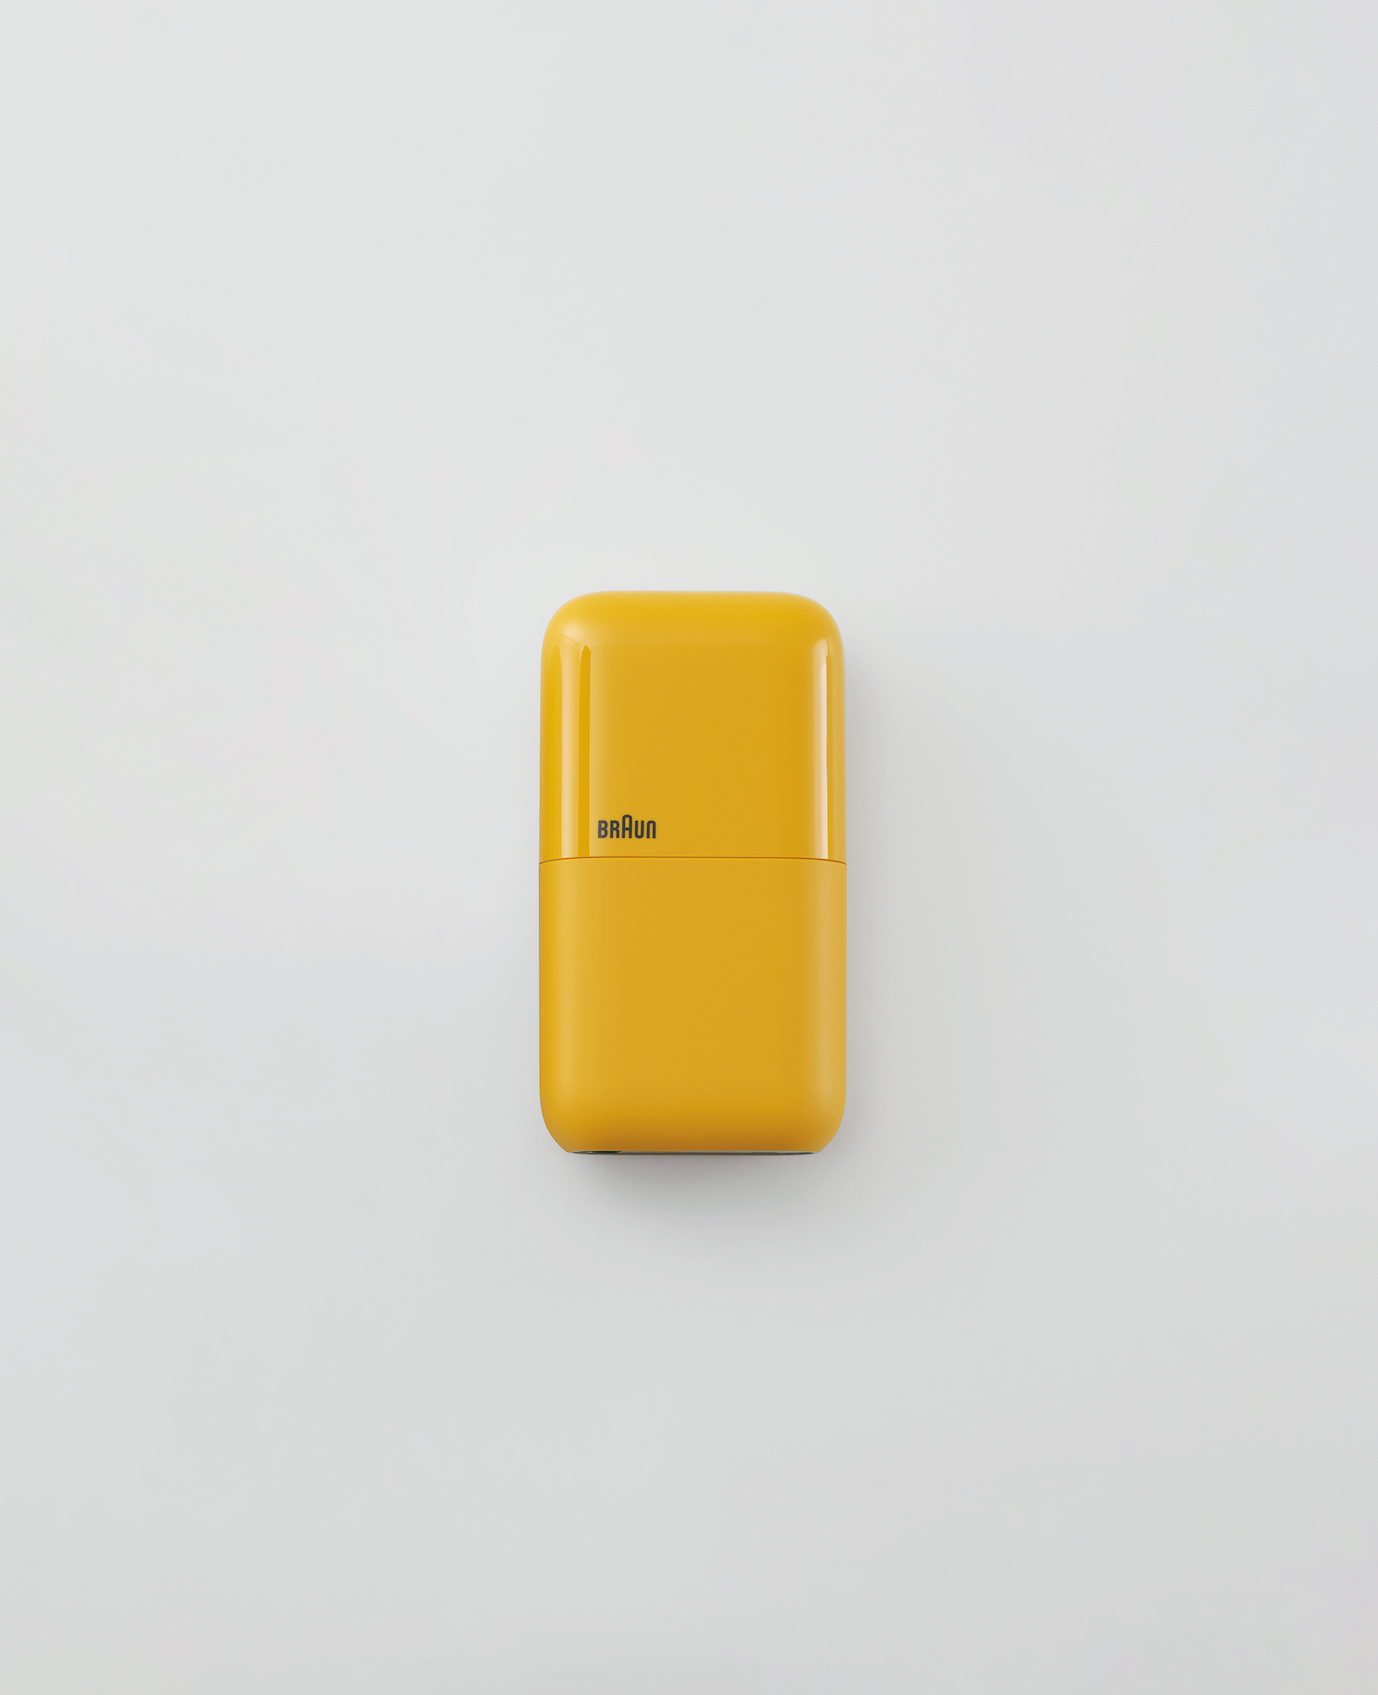 small rectangular yellow pocket shaver against plain light background